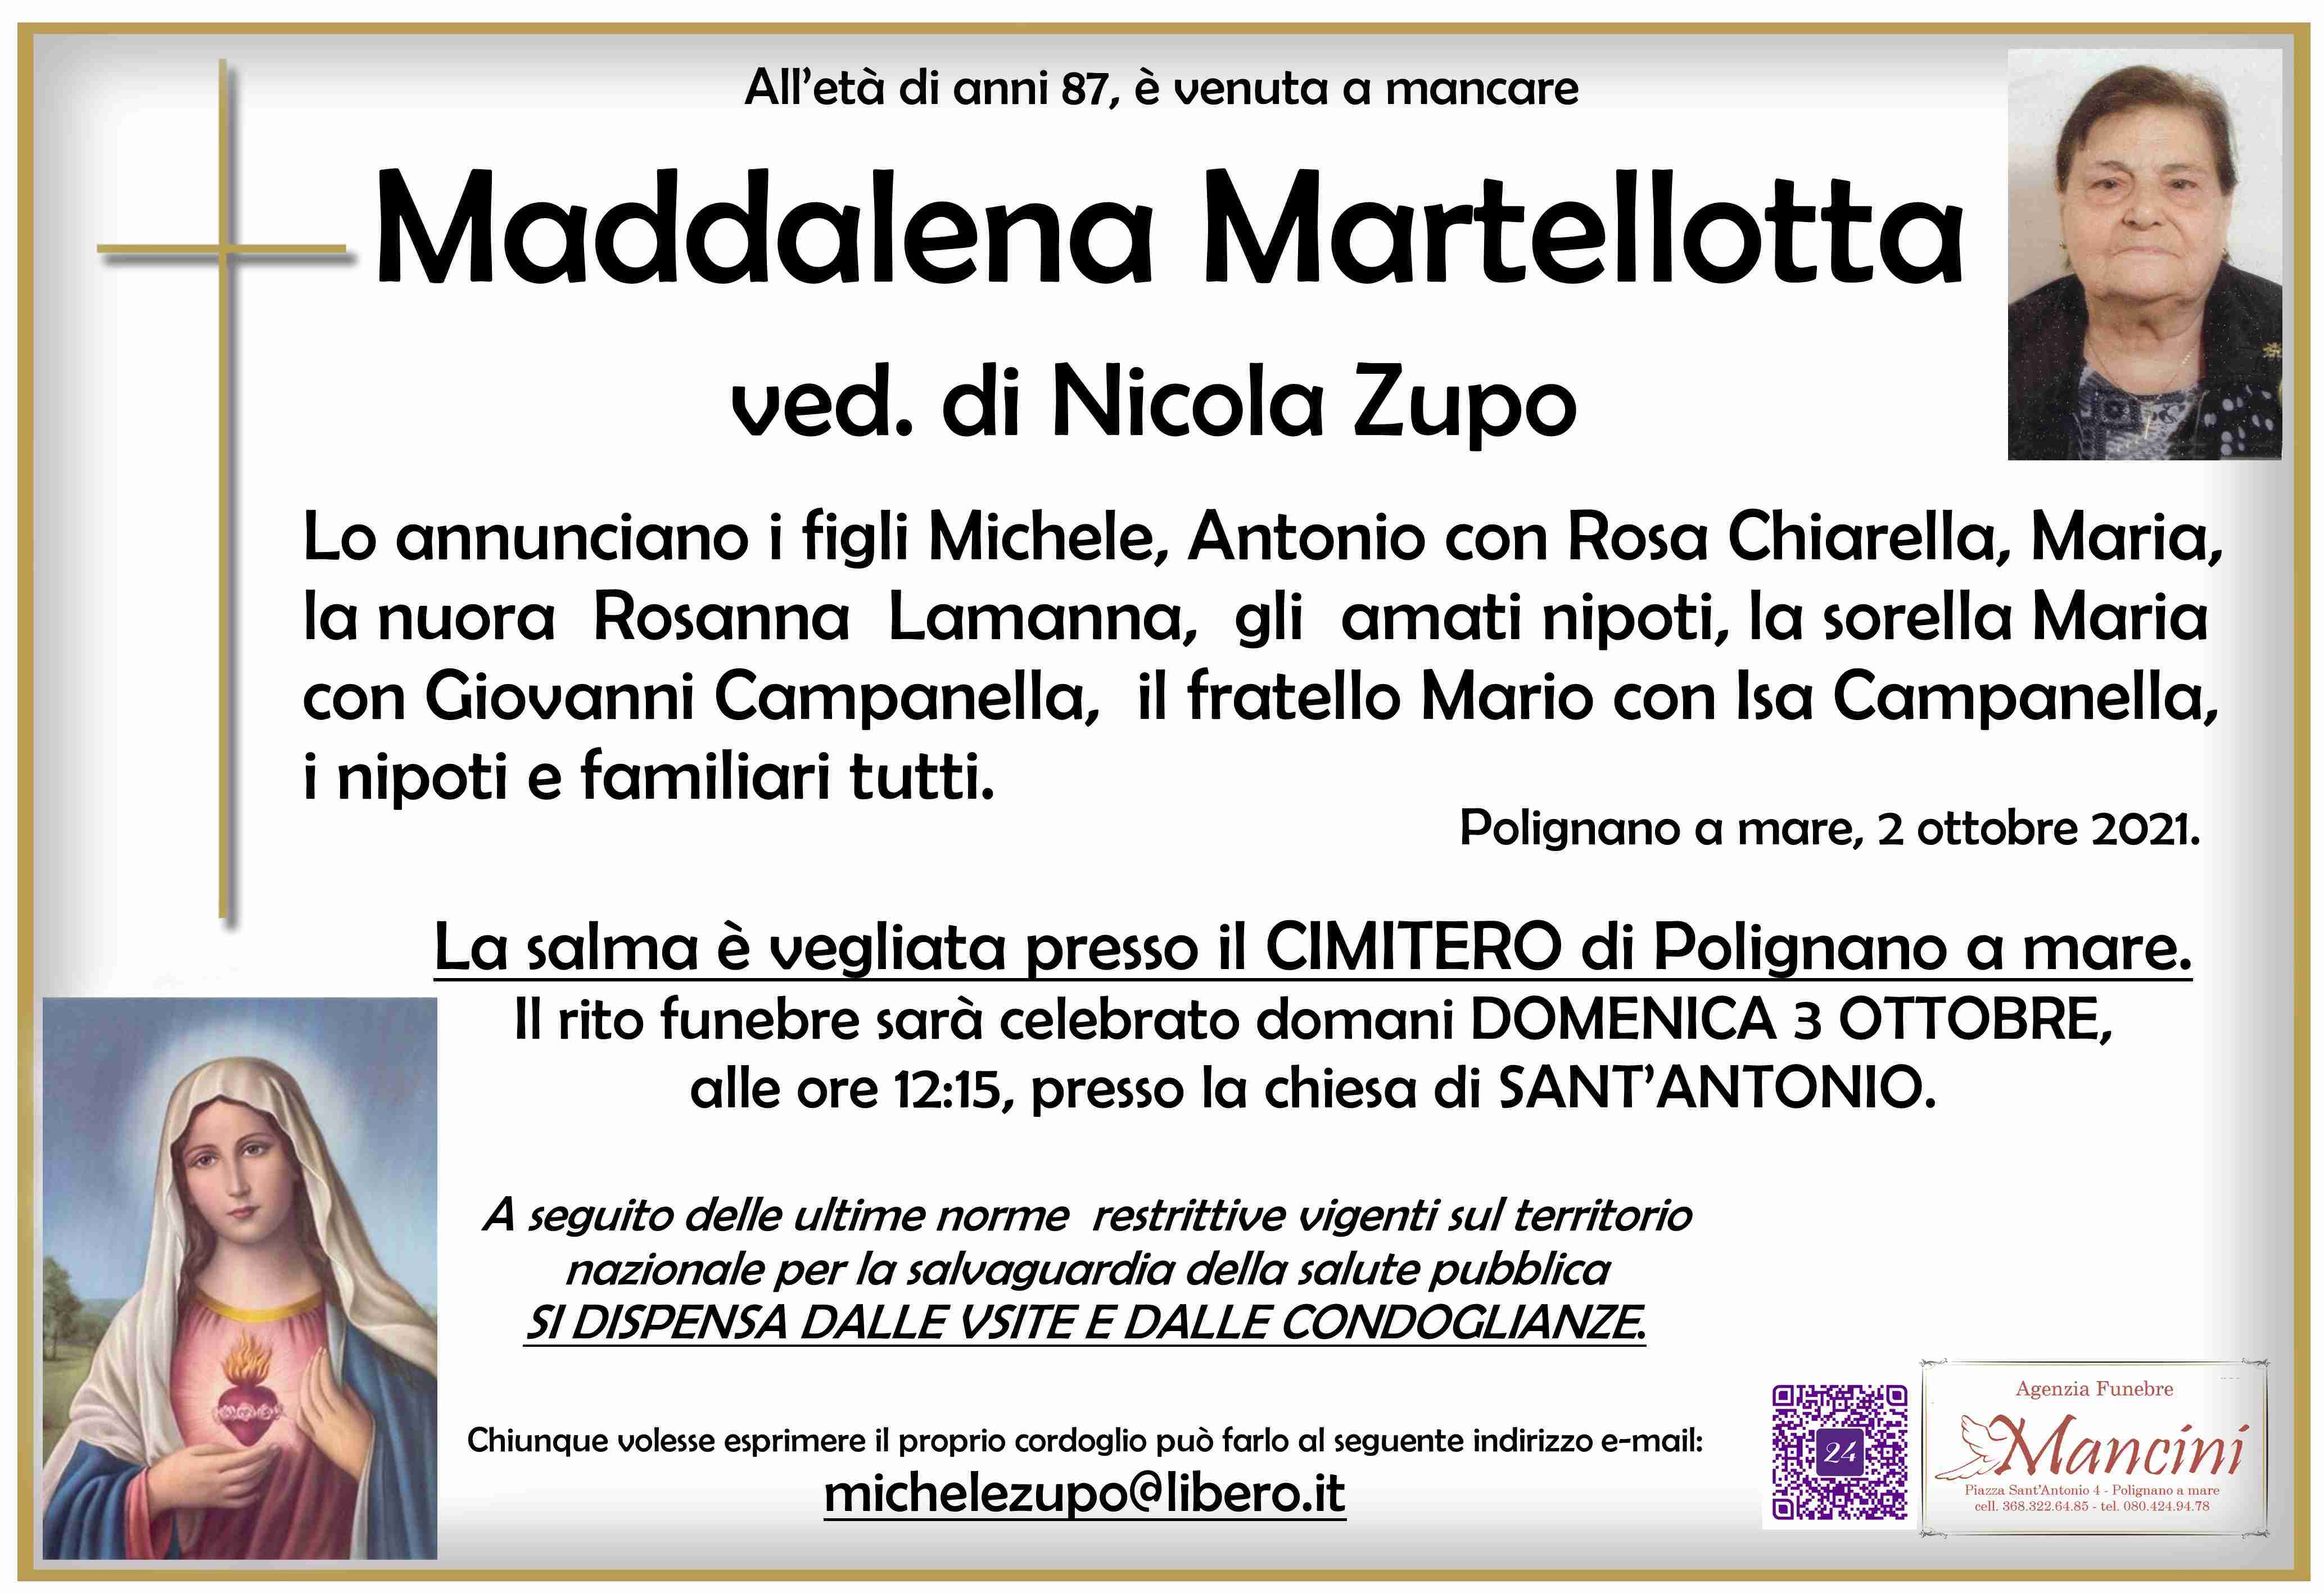 Maddalena Martellotta